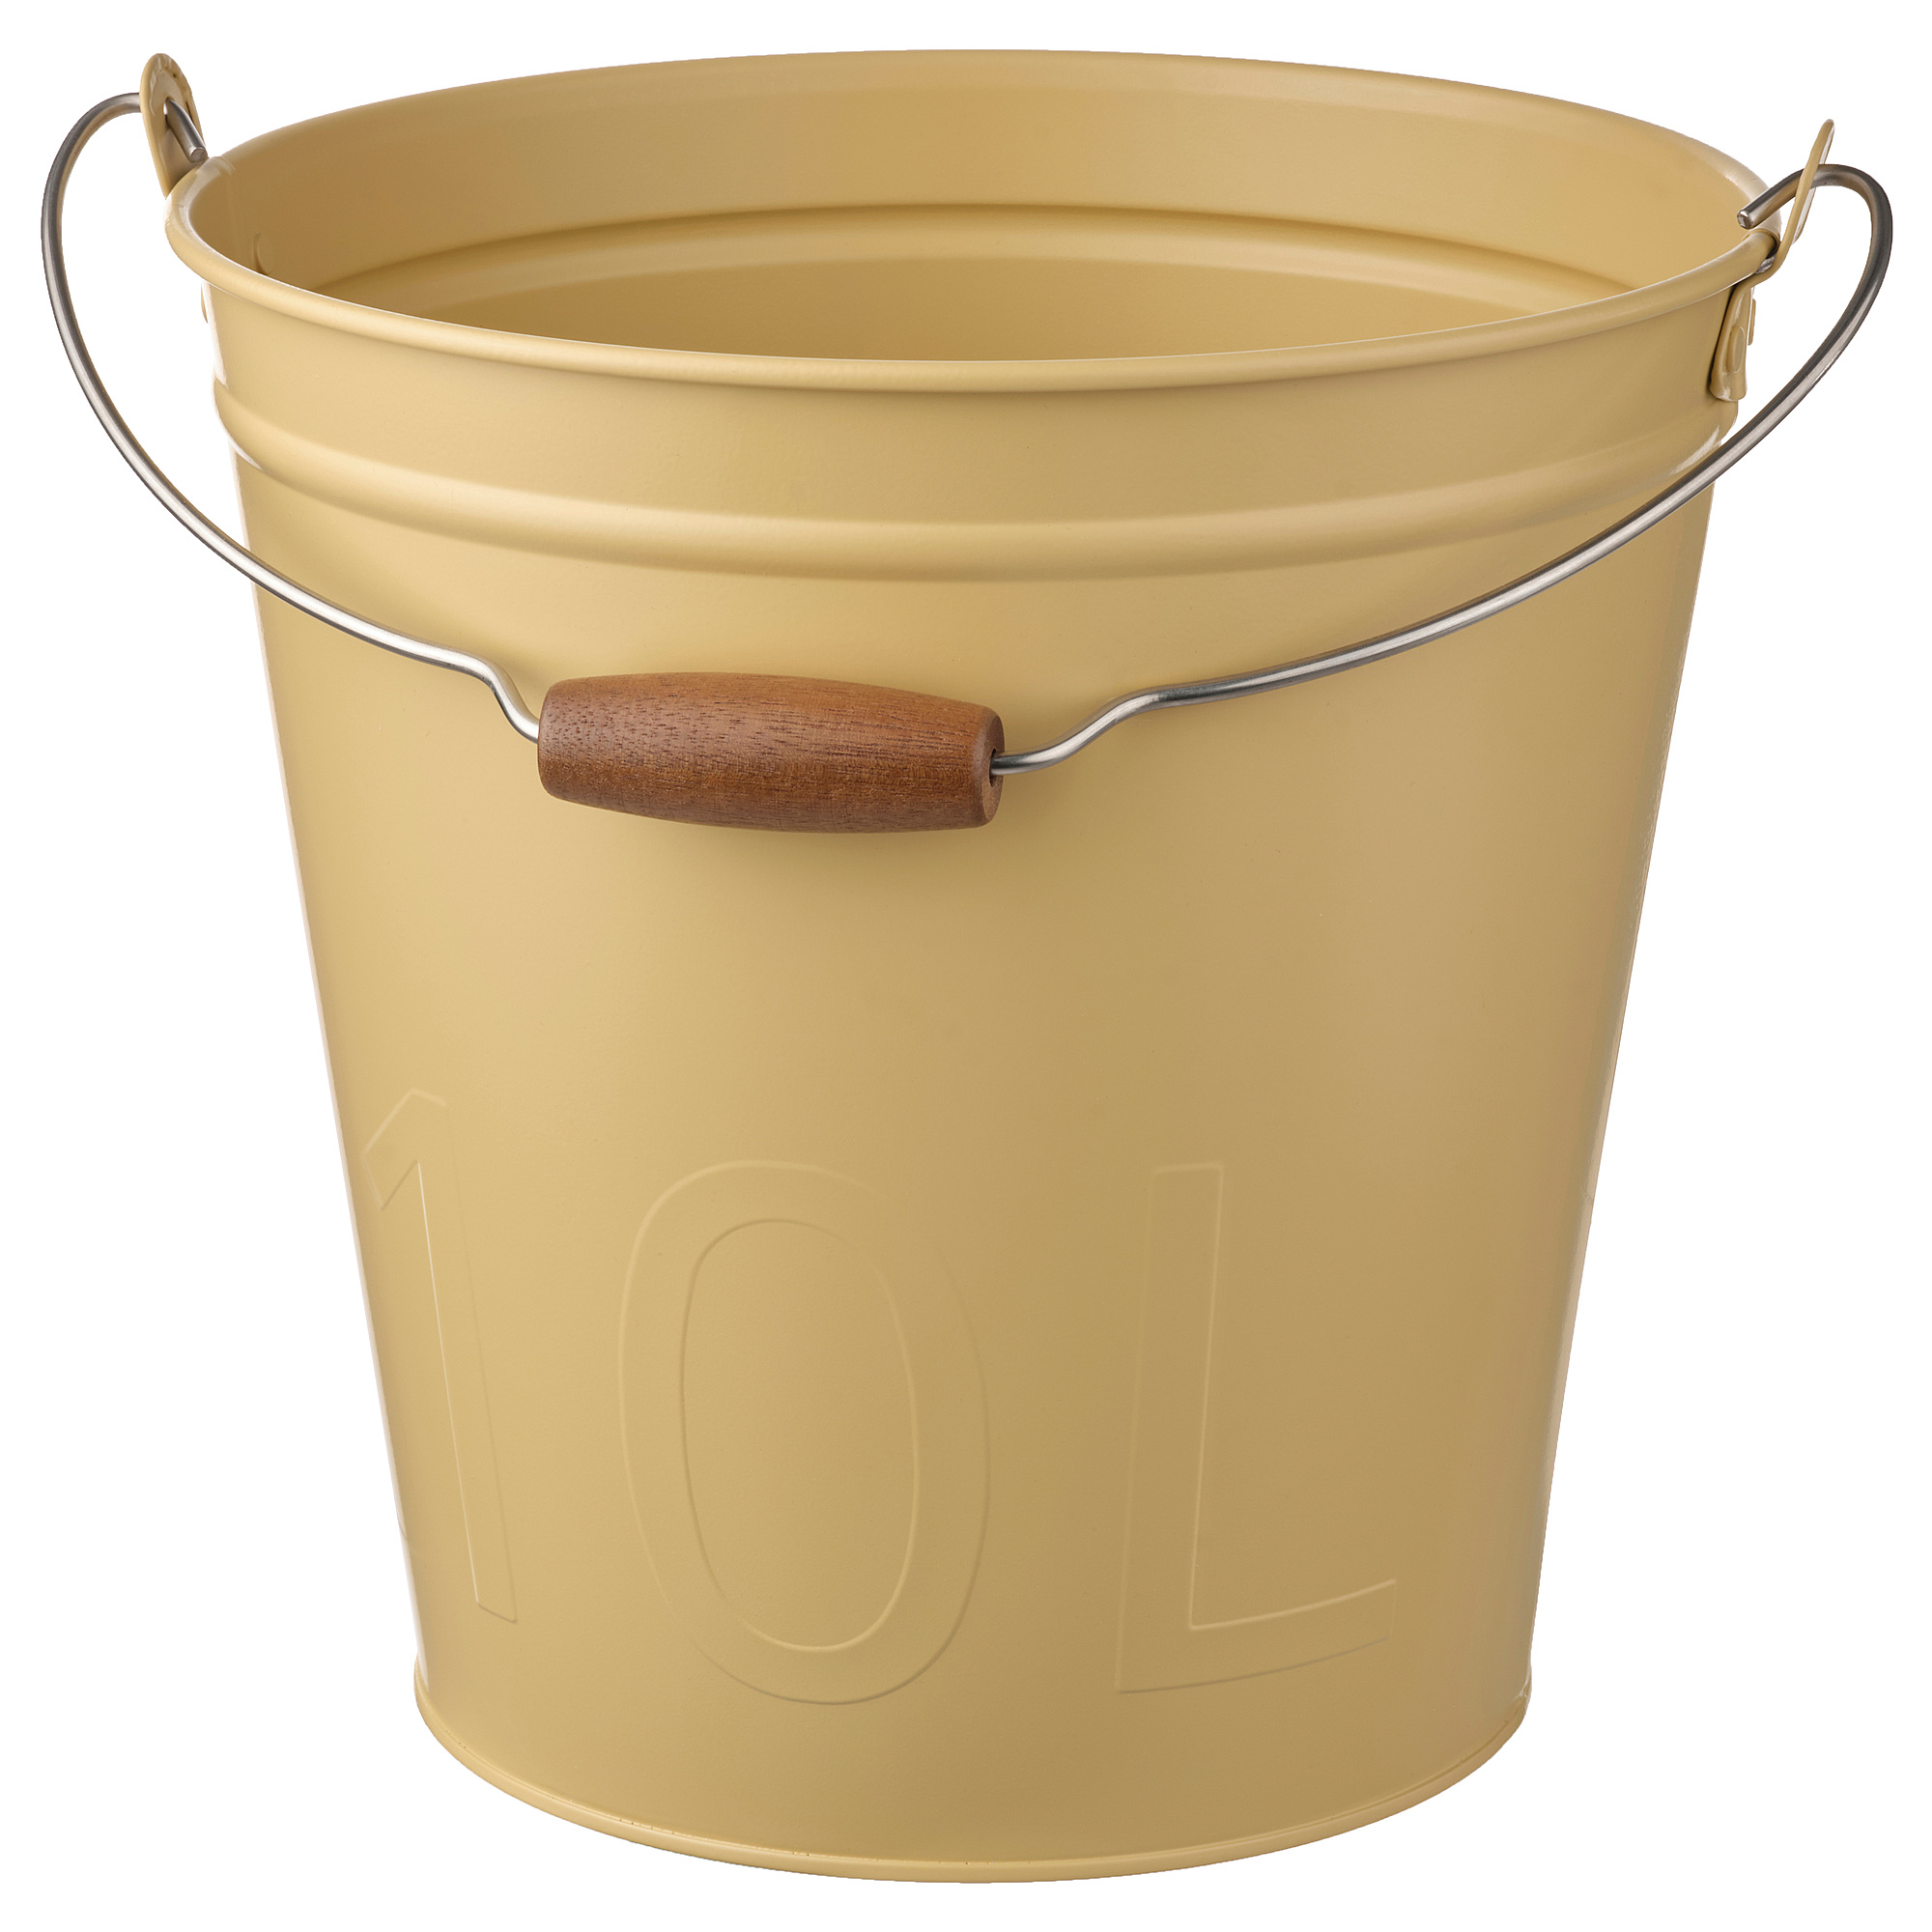 ÅKERBÄR bucket/plant pot